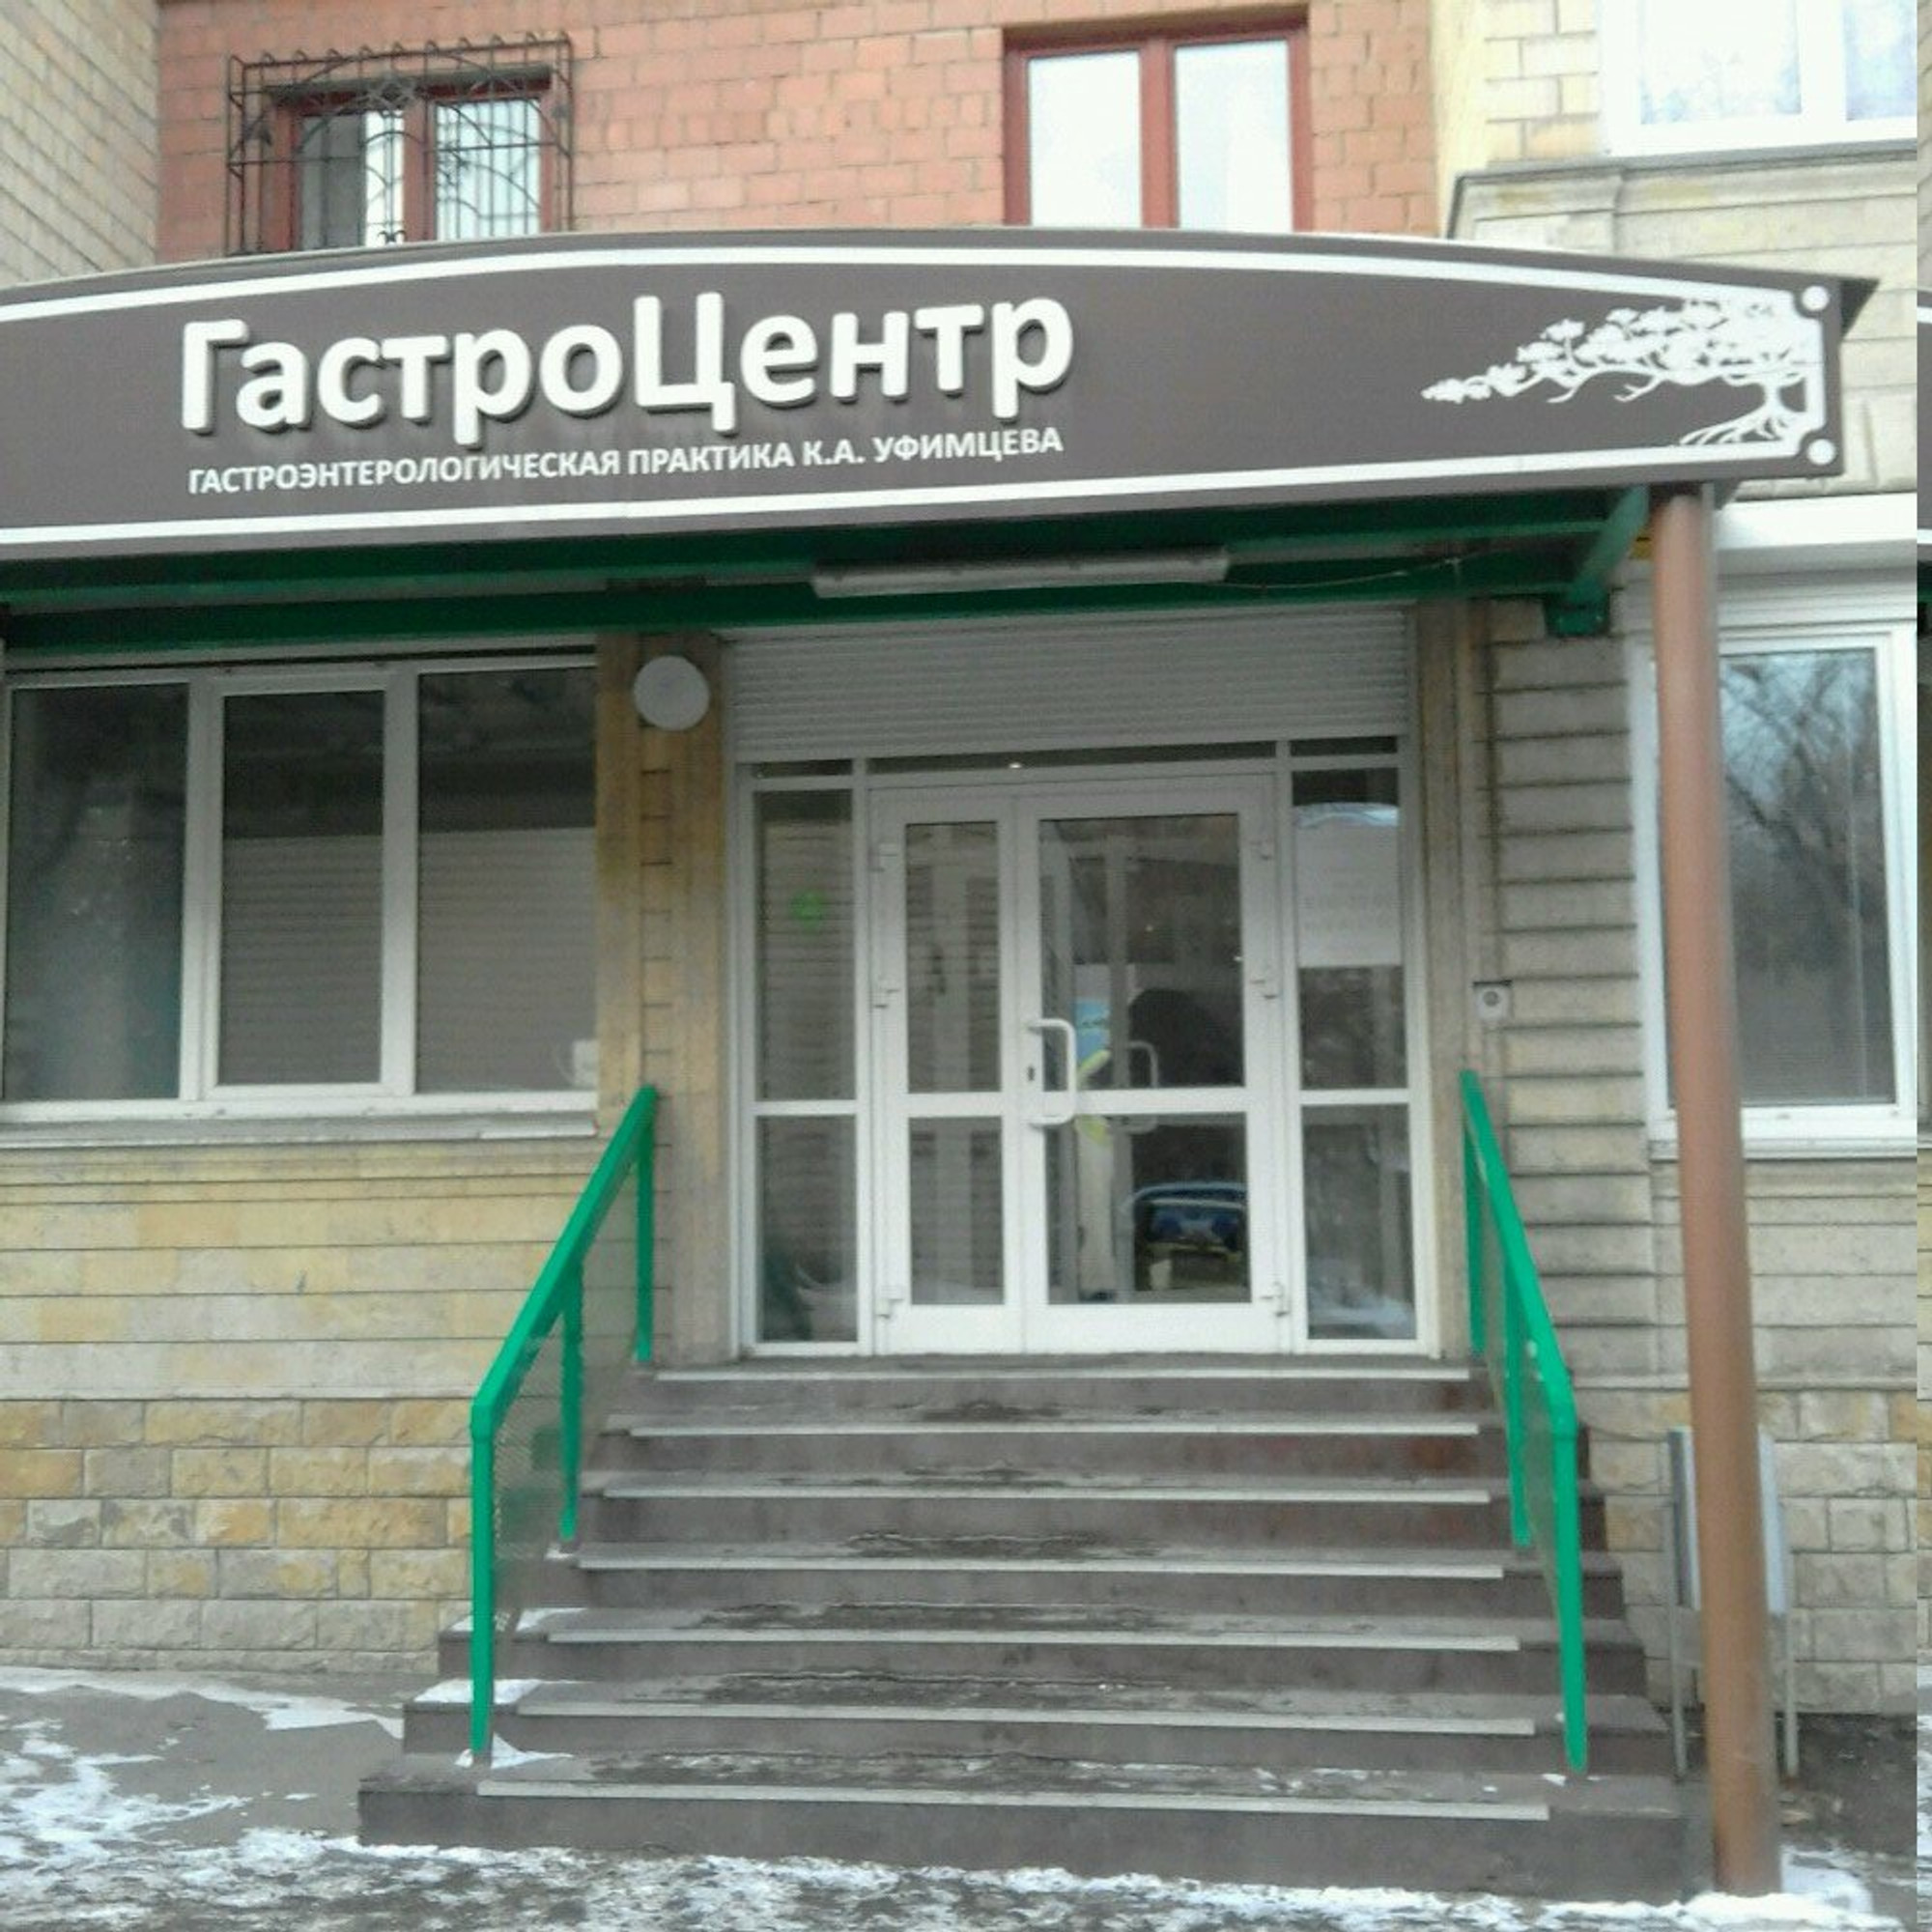 Гастроэнтеролгический центр Уфимцева (Медцентр, клиника)